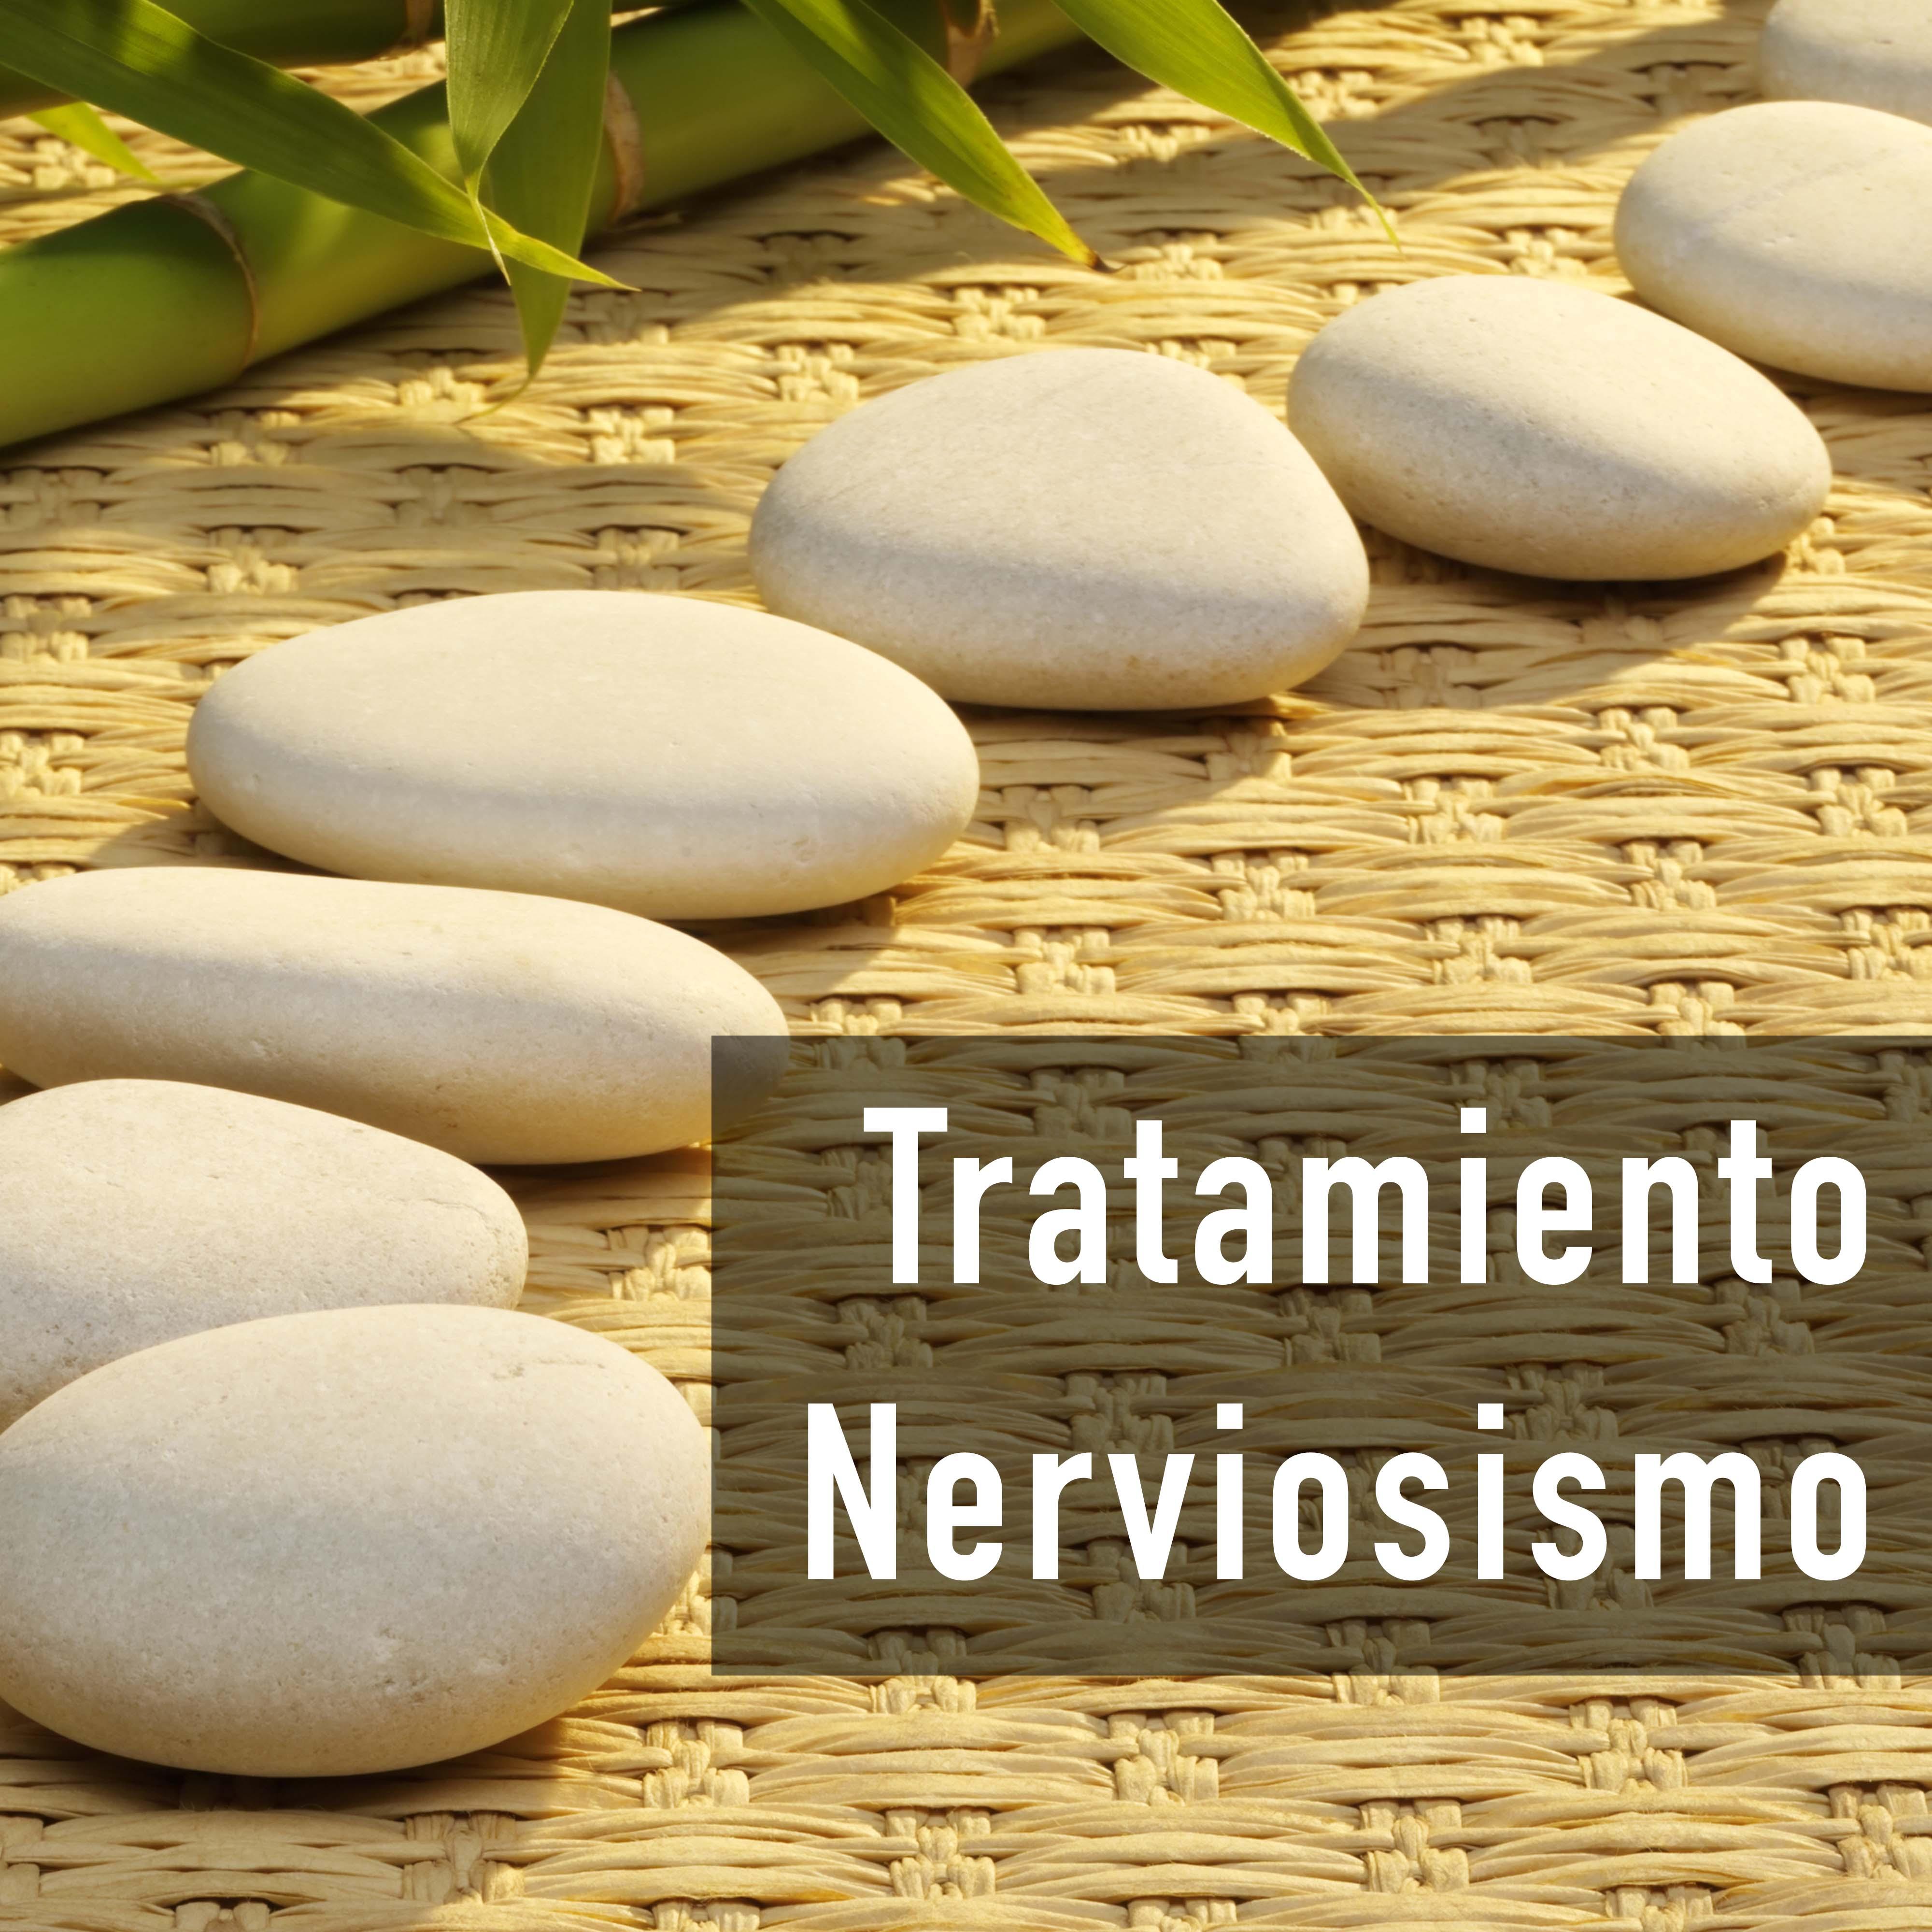 Tratamiento Nerviosismo  Mu sica Relajante y Calmante para Tranquilizar los Nervios